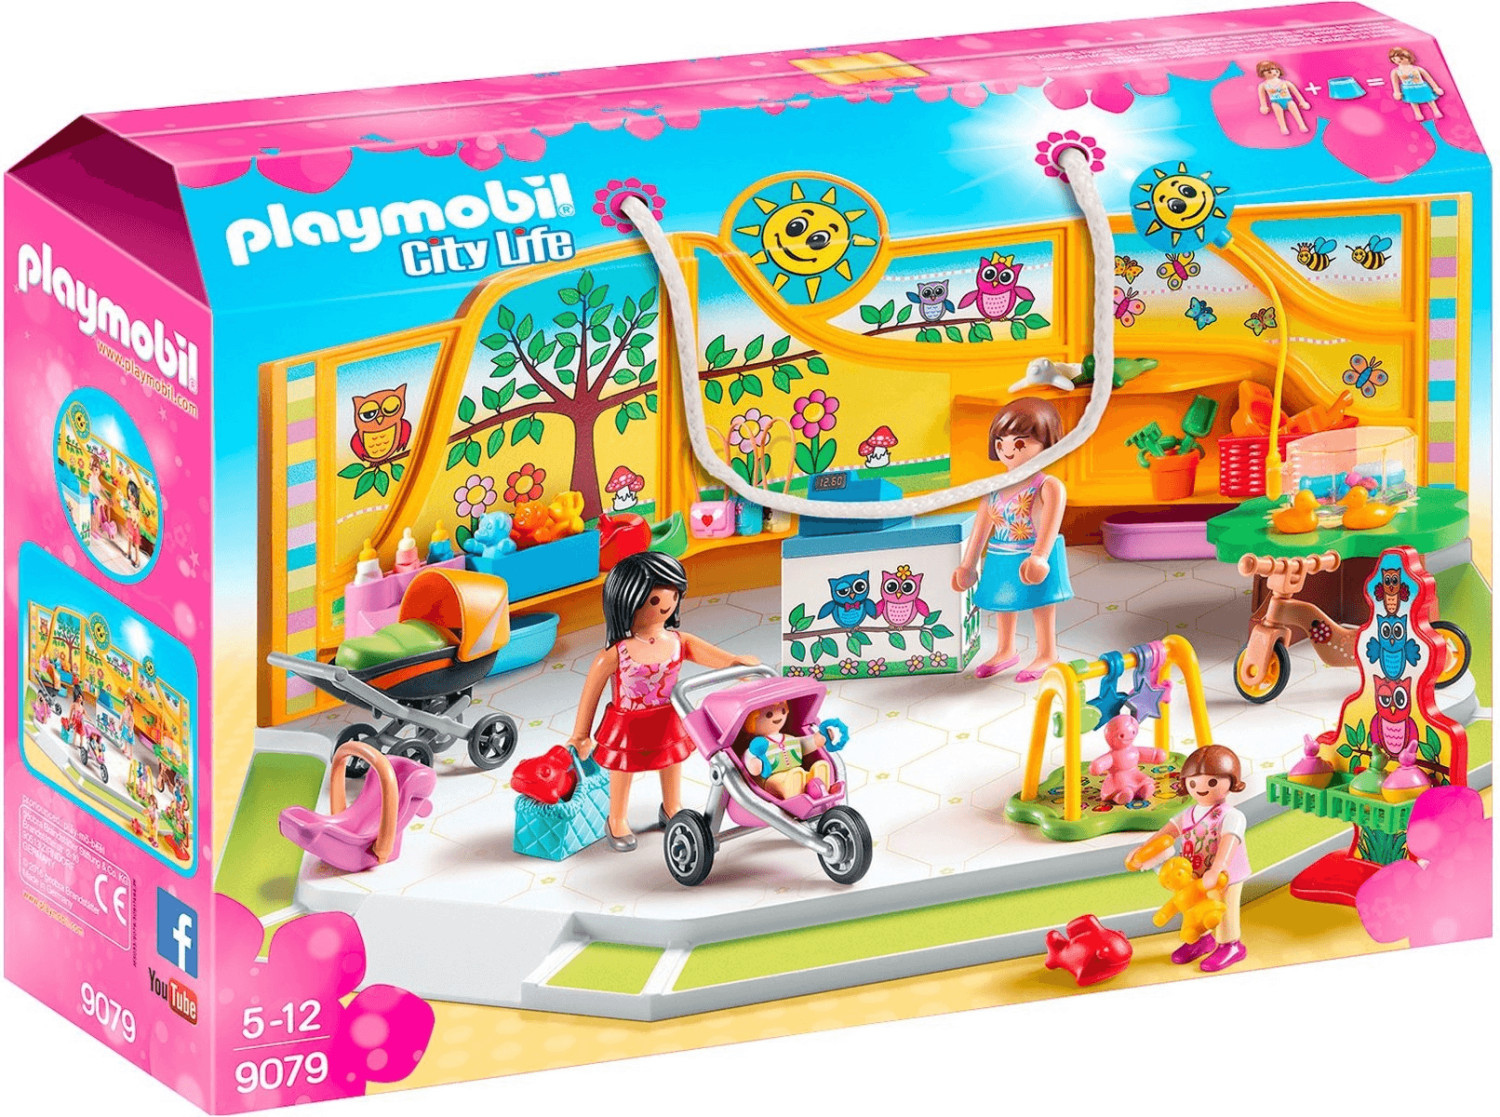 Les Playmobil City Life en promo : les jouets pas cher